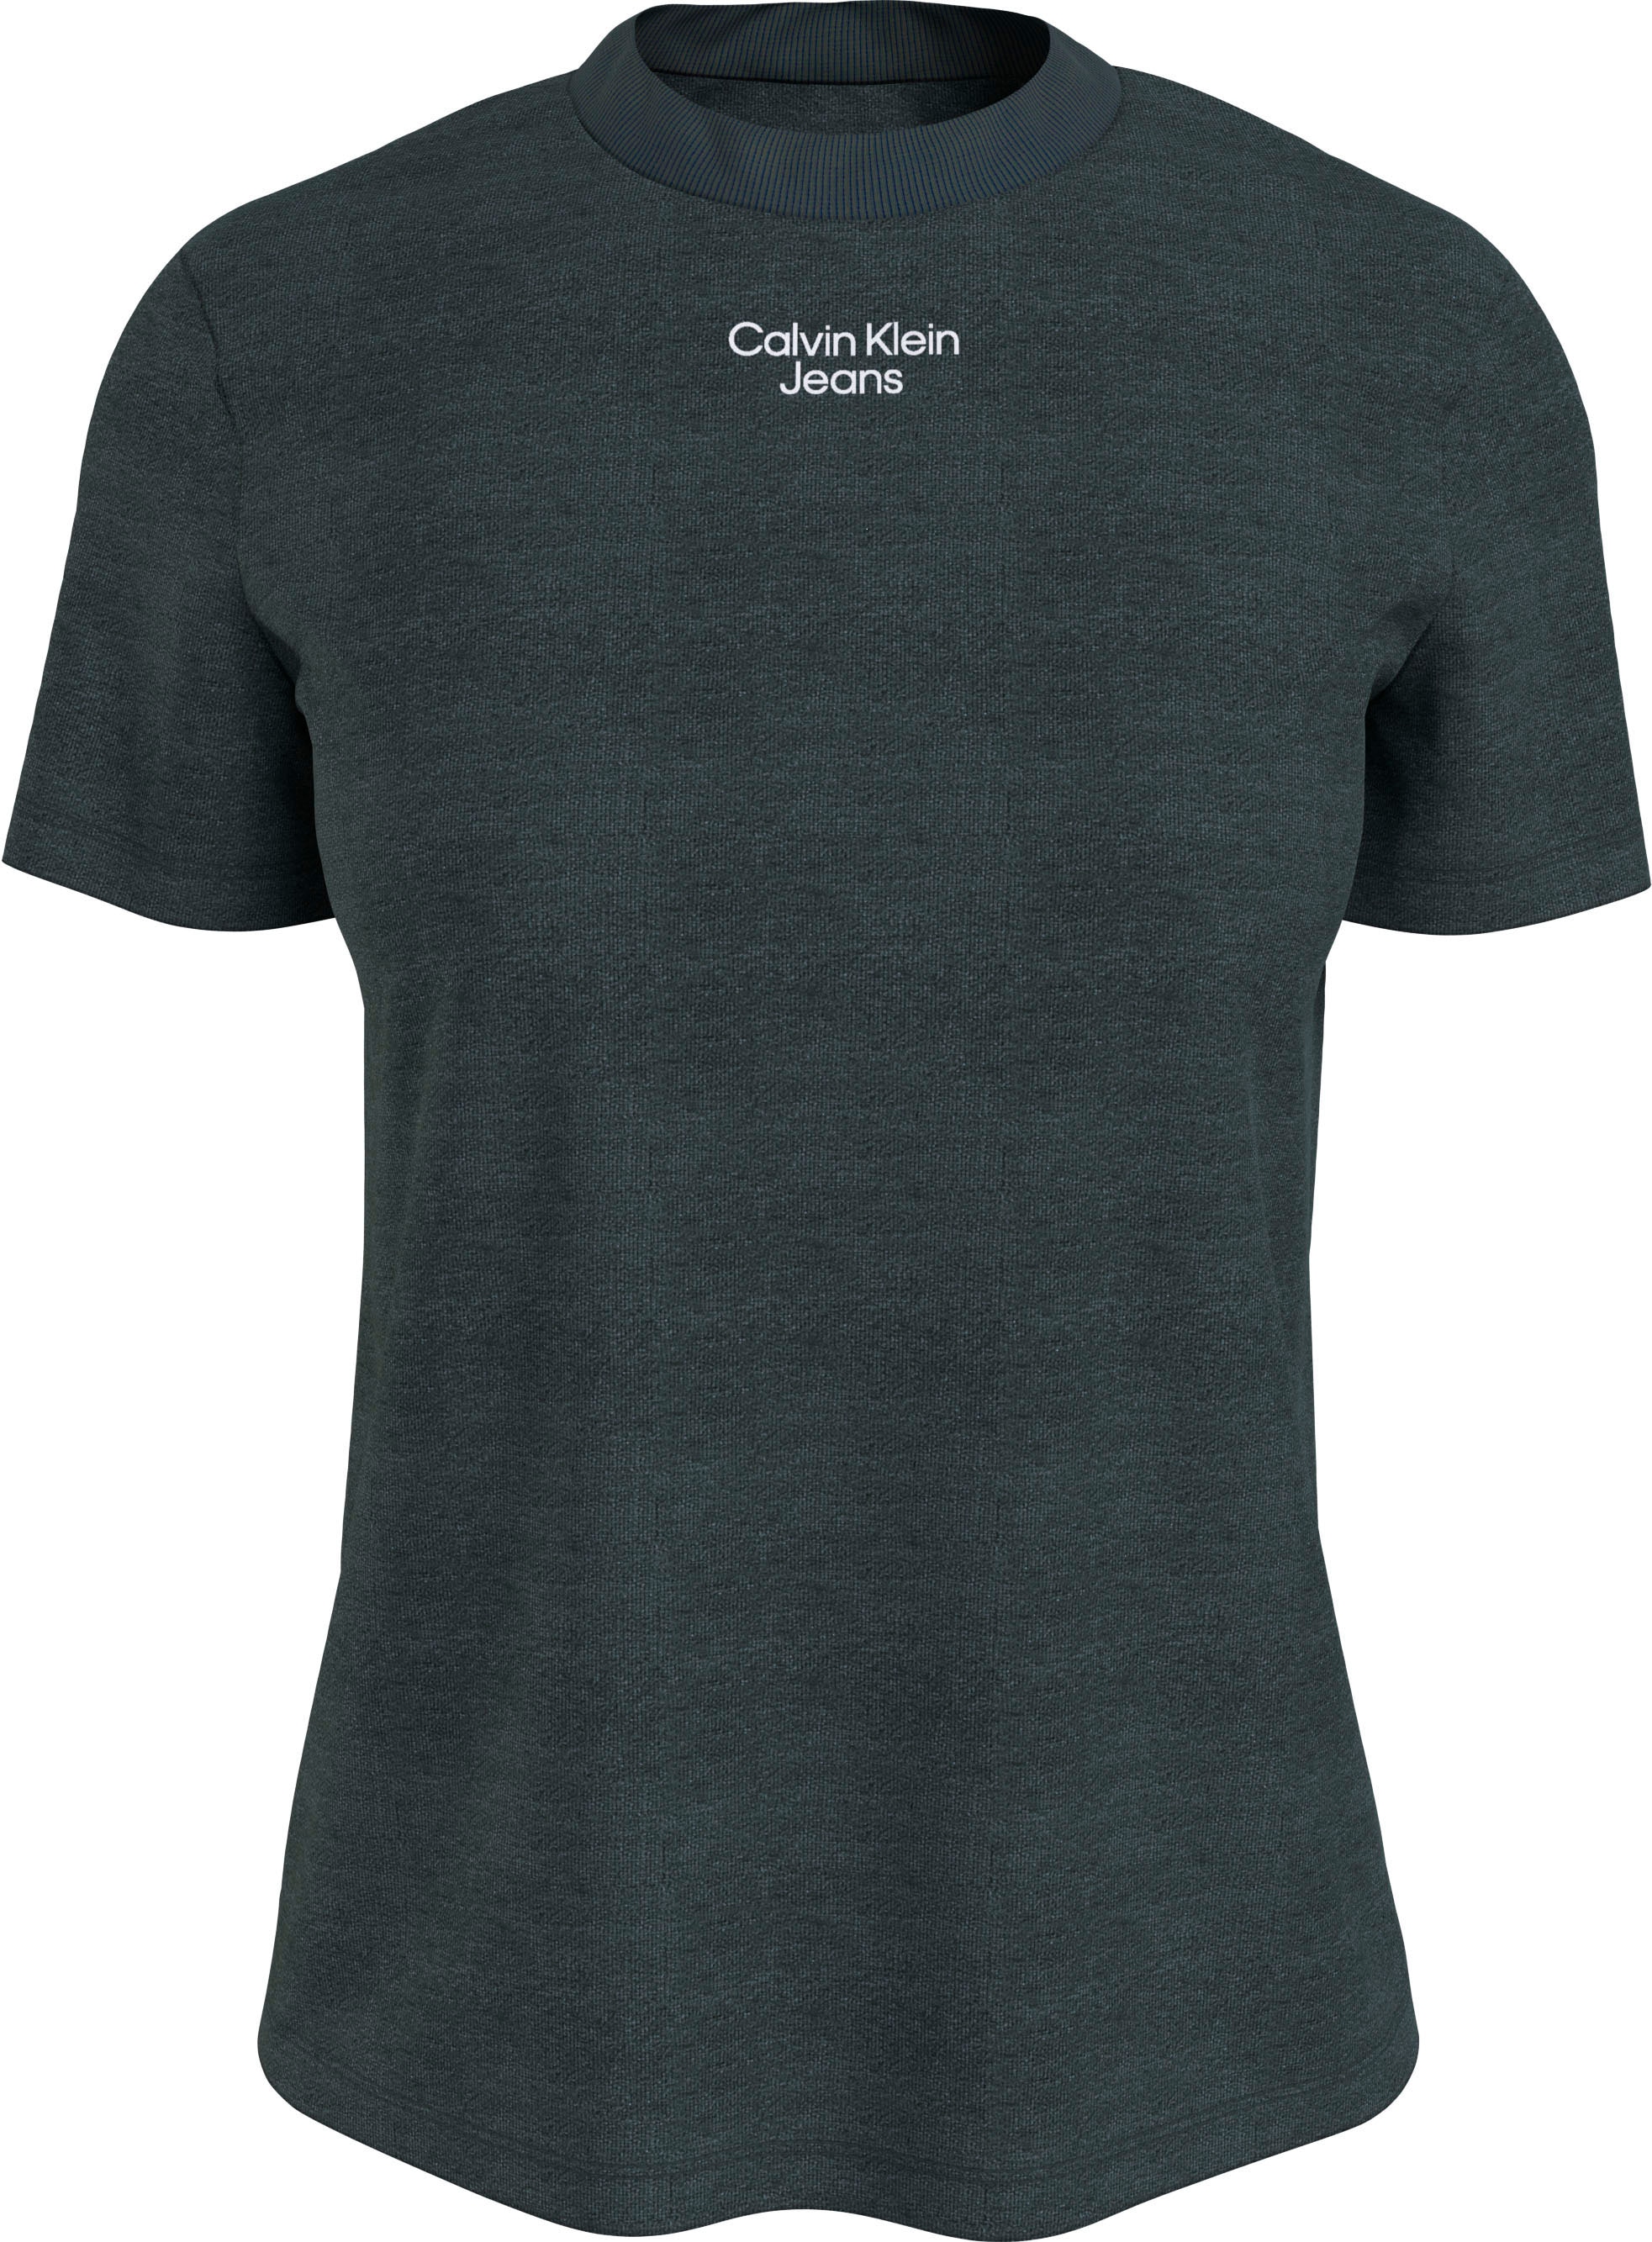 MODERN dezentem bestellen für STRAIGHT »STACKED Klein BAUR T-Shirt Calvin Logodruck Calvin mit Klein Jeans Jeans | LOGO TEE«,